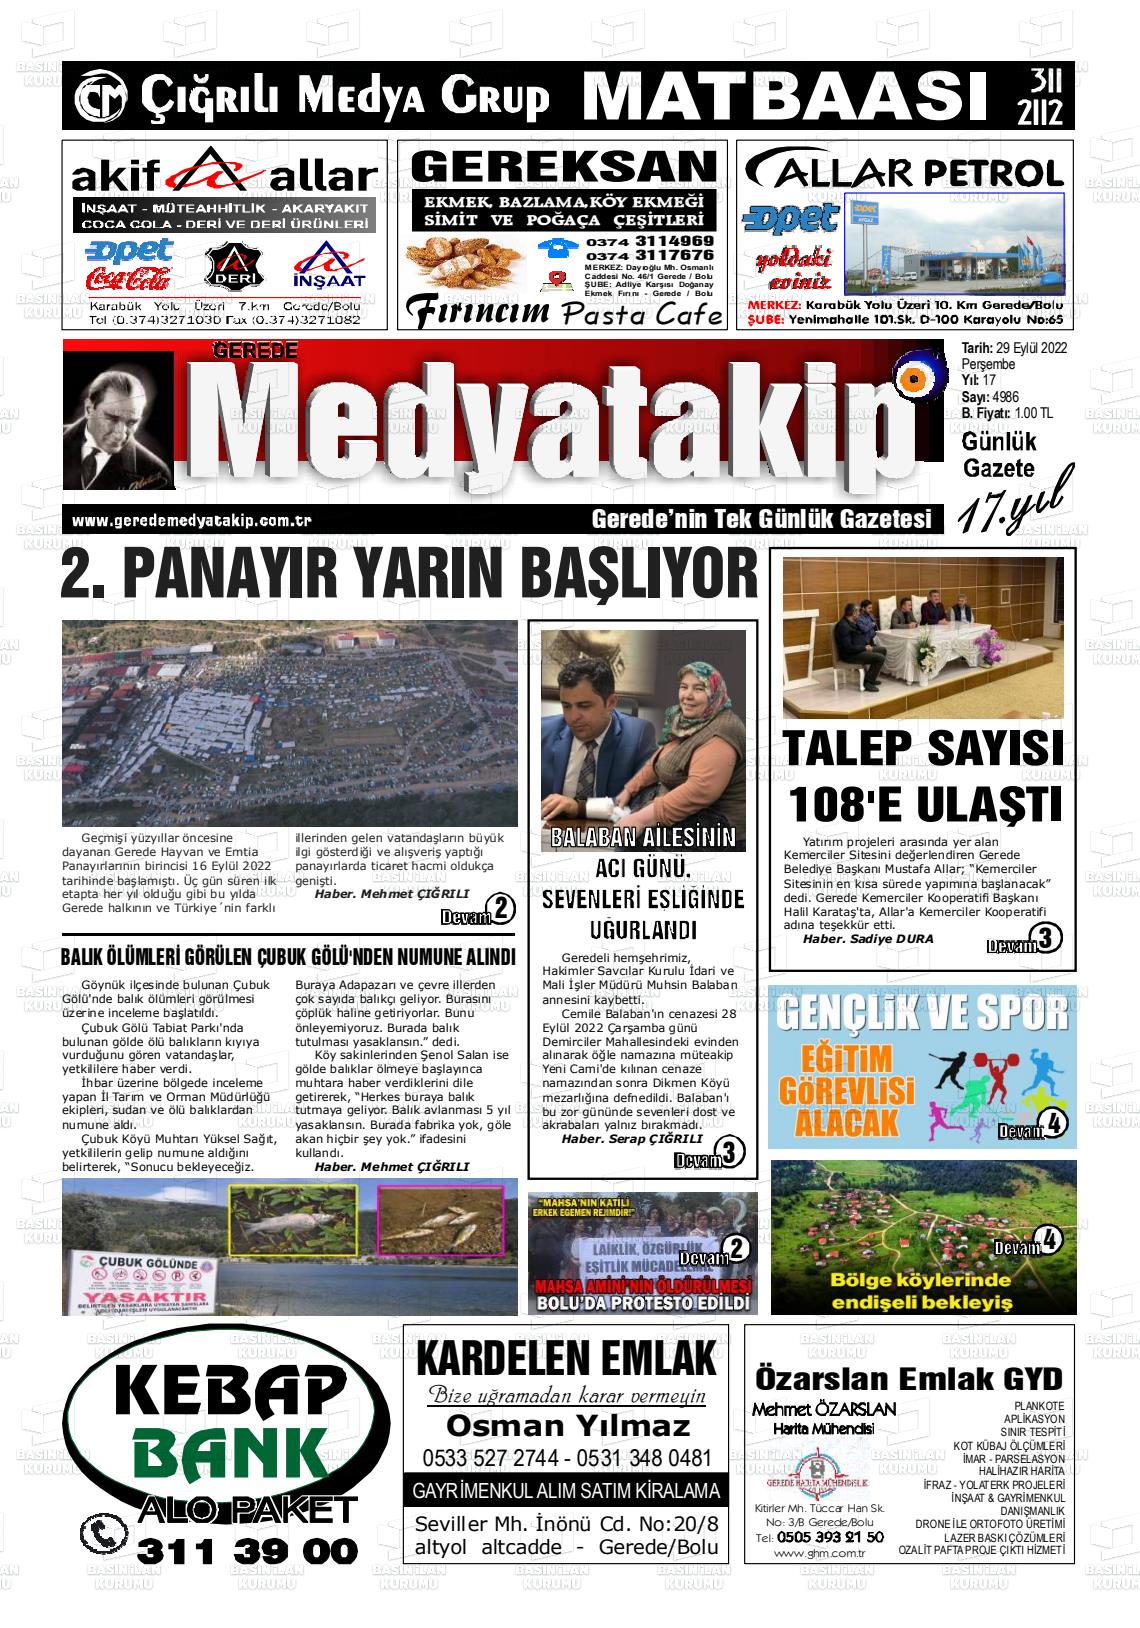 29 Eylül 2022 Gerede Medya Takip Gazete Manşeti